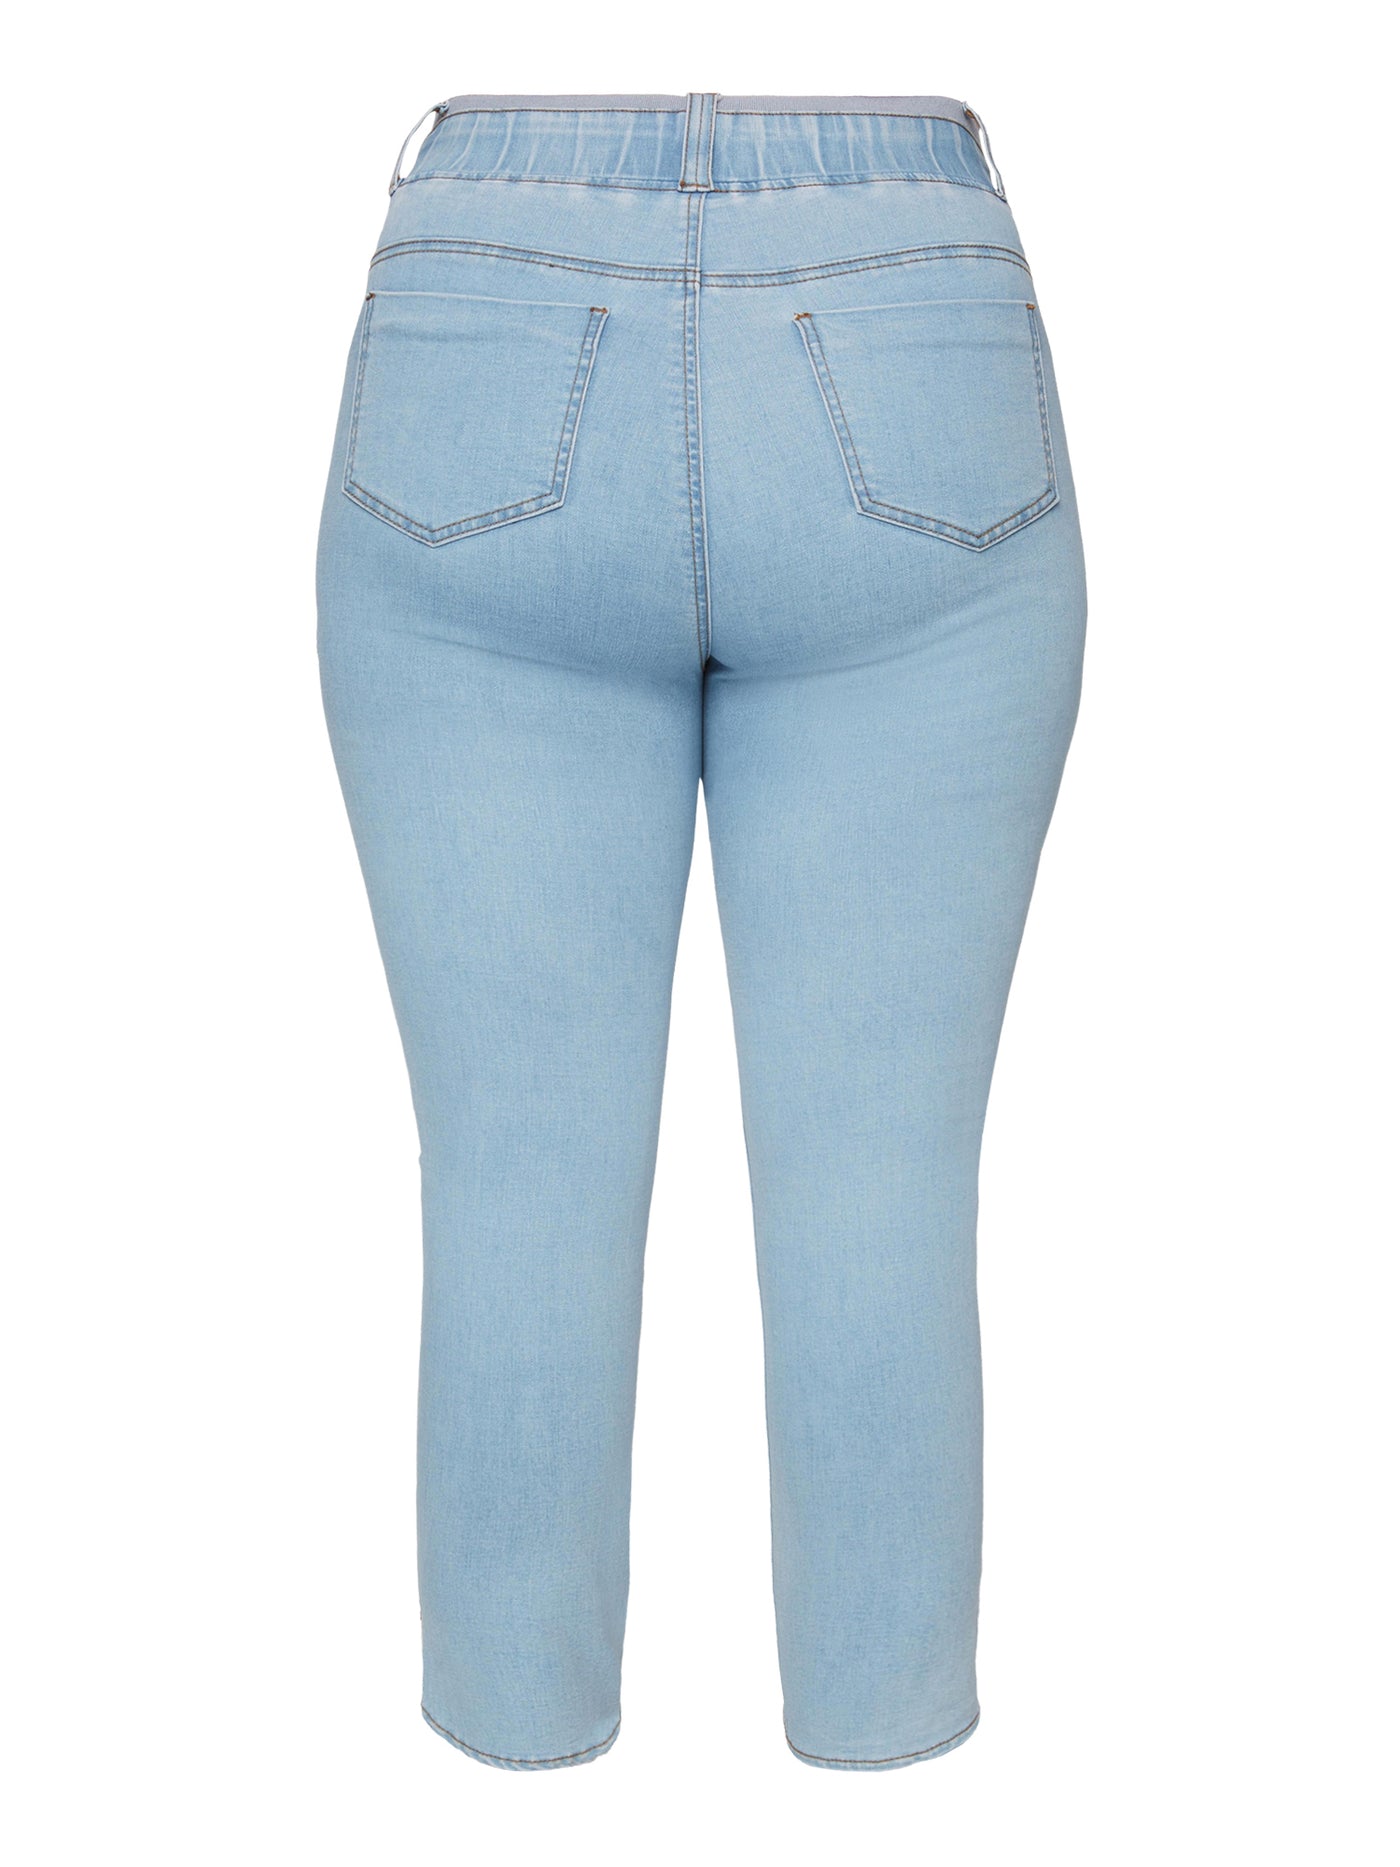 Jeans Sofia 7/8 - Light Blue Denim